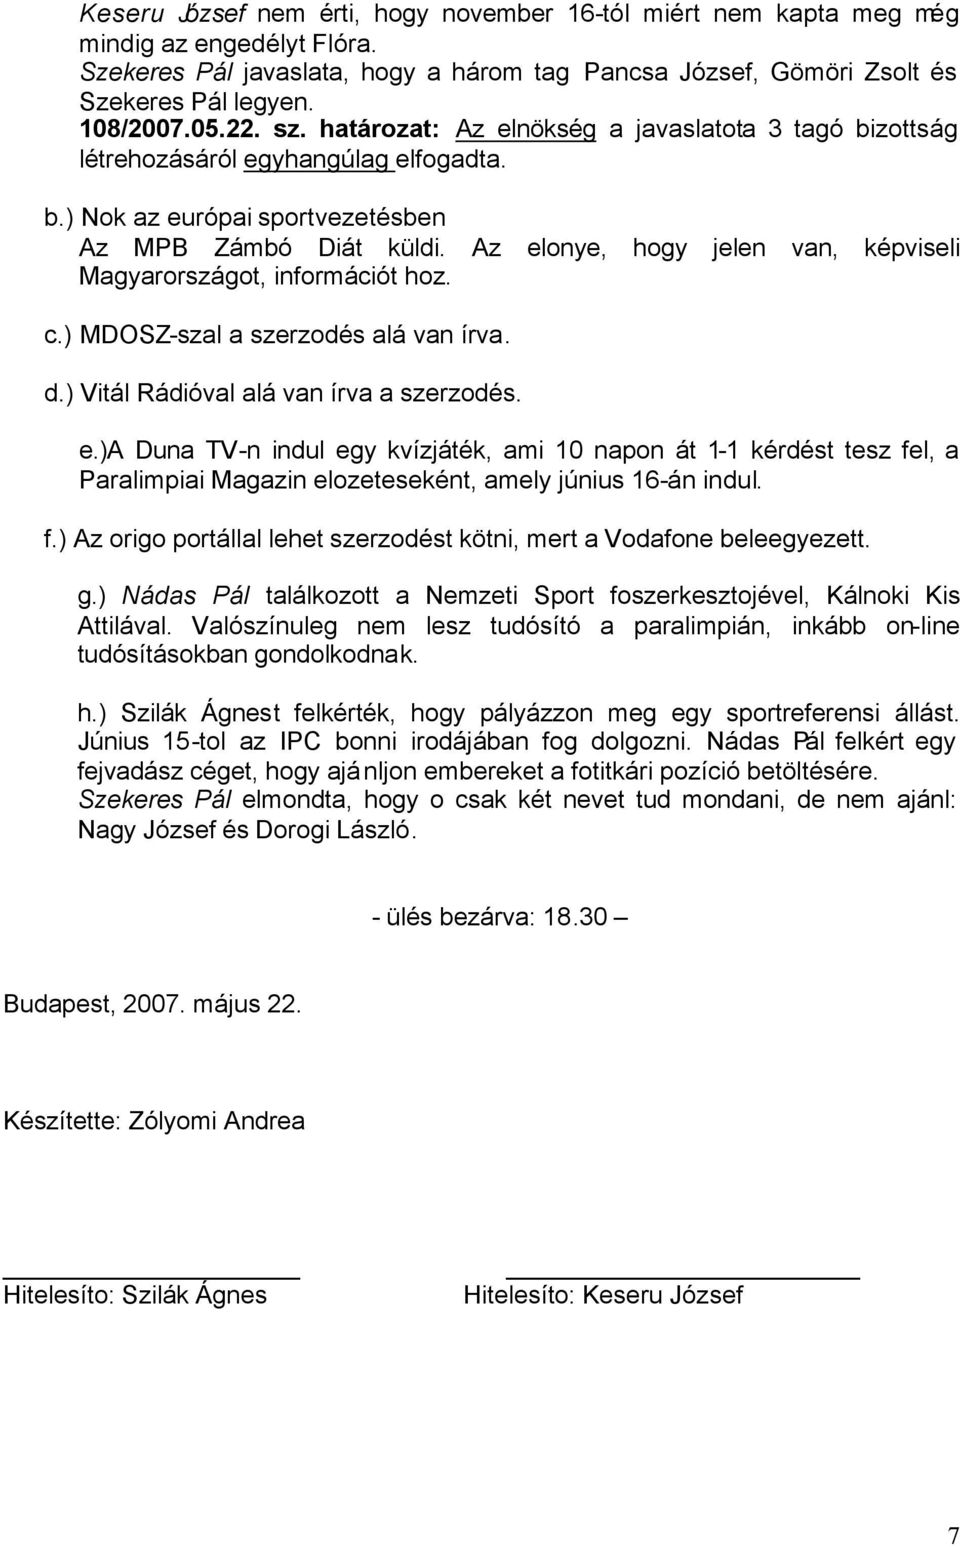 Az elonye, hogy jelen van, képviseli Magyarországot, információt hoz. c.) MDOSZ-szal a szerzodés alá van írva. d.) Vitál Rádióval alá van írva a szerzodés. e.)a Duna TV-n indul egy kvízjáték, ami 10 napon át 1-1 kérdést tesz fel, a Paralimpiai Magazin elozeteseként, amely június 16-án indul.